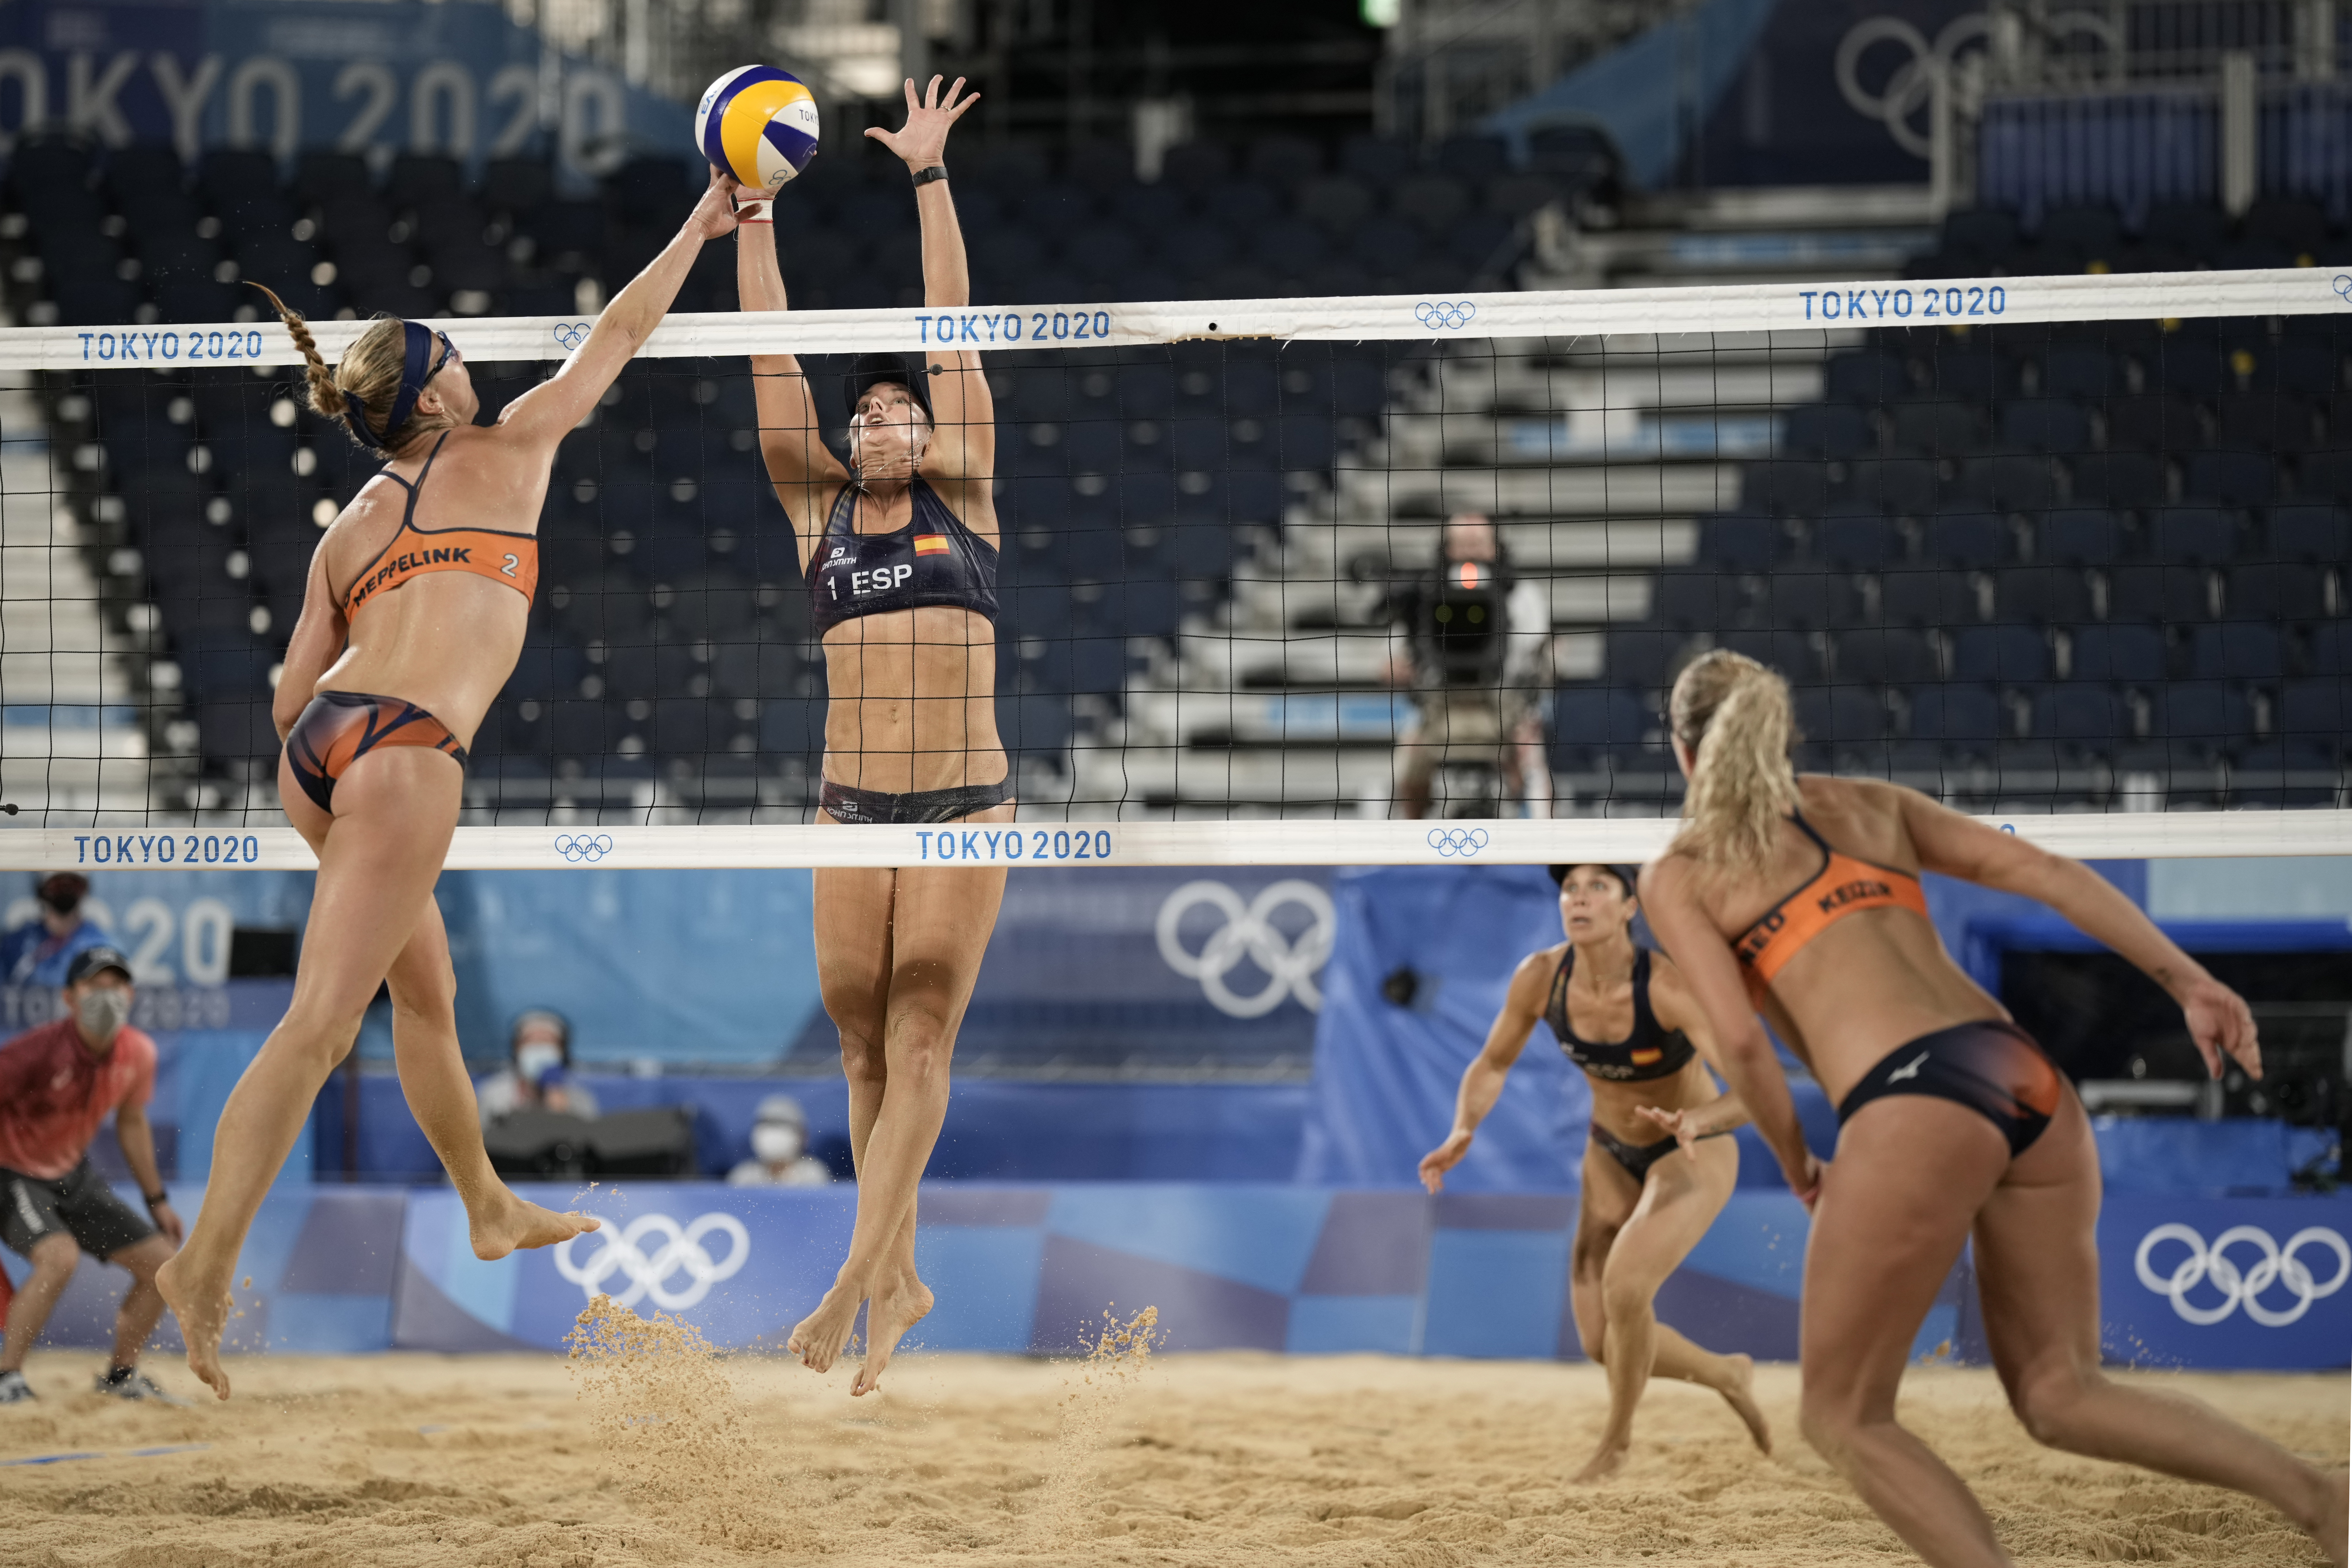 daniel stromgren add beach volleyball malfunction photos photo